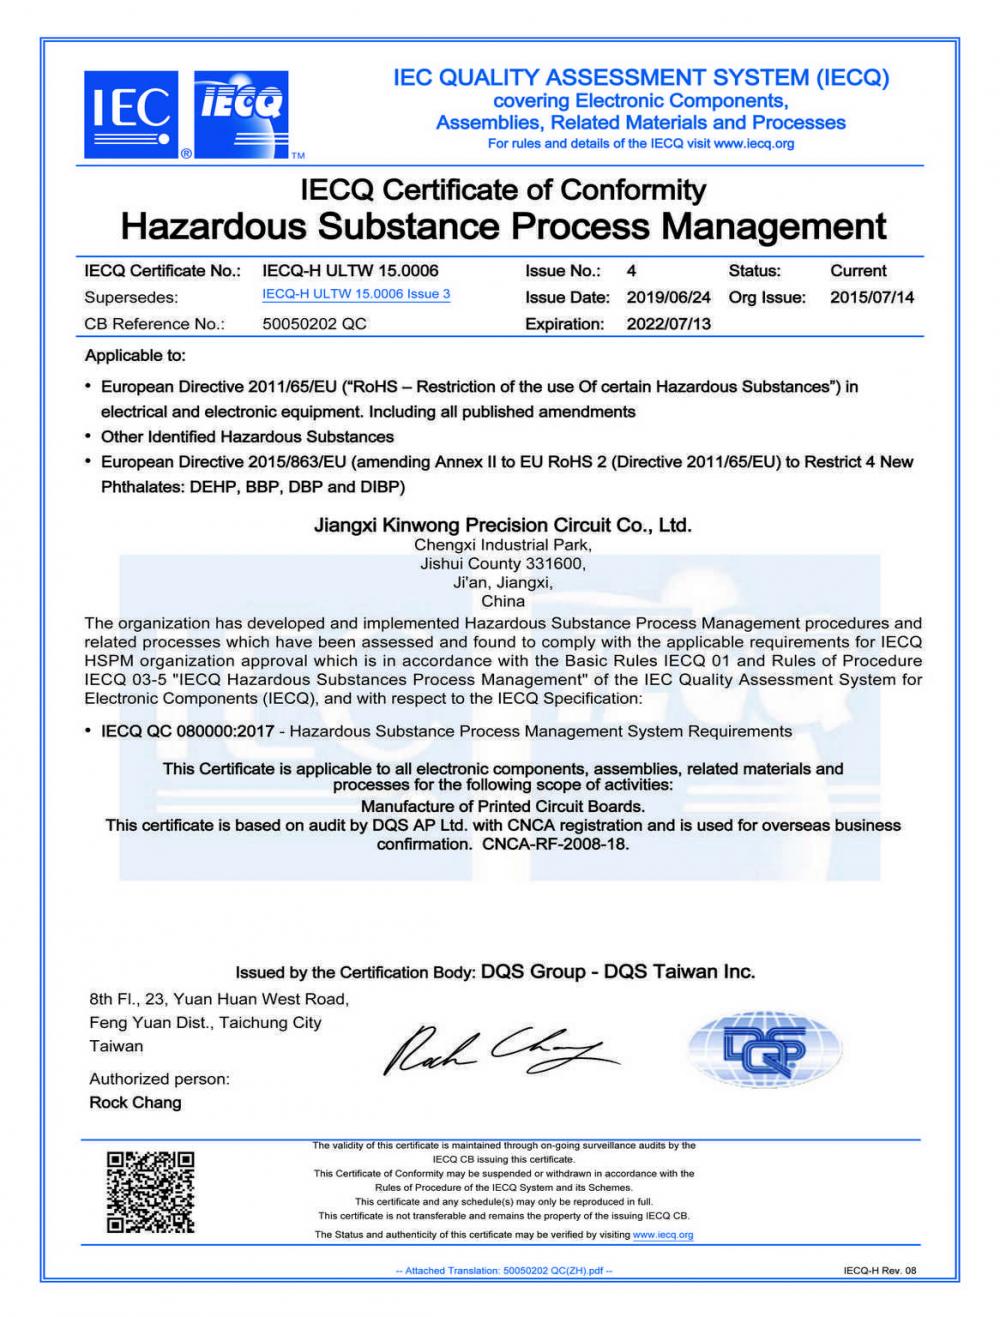 IECQ Certificate of Conformity Hazardous Substance Process Management